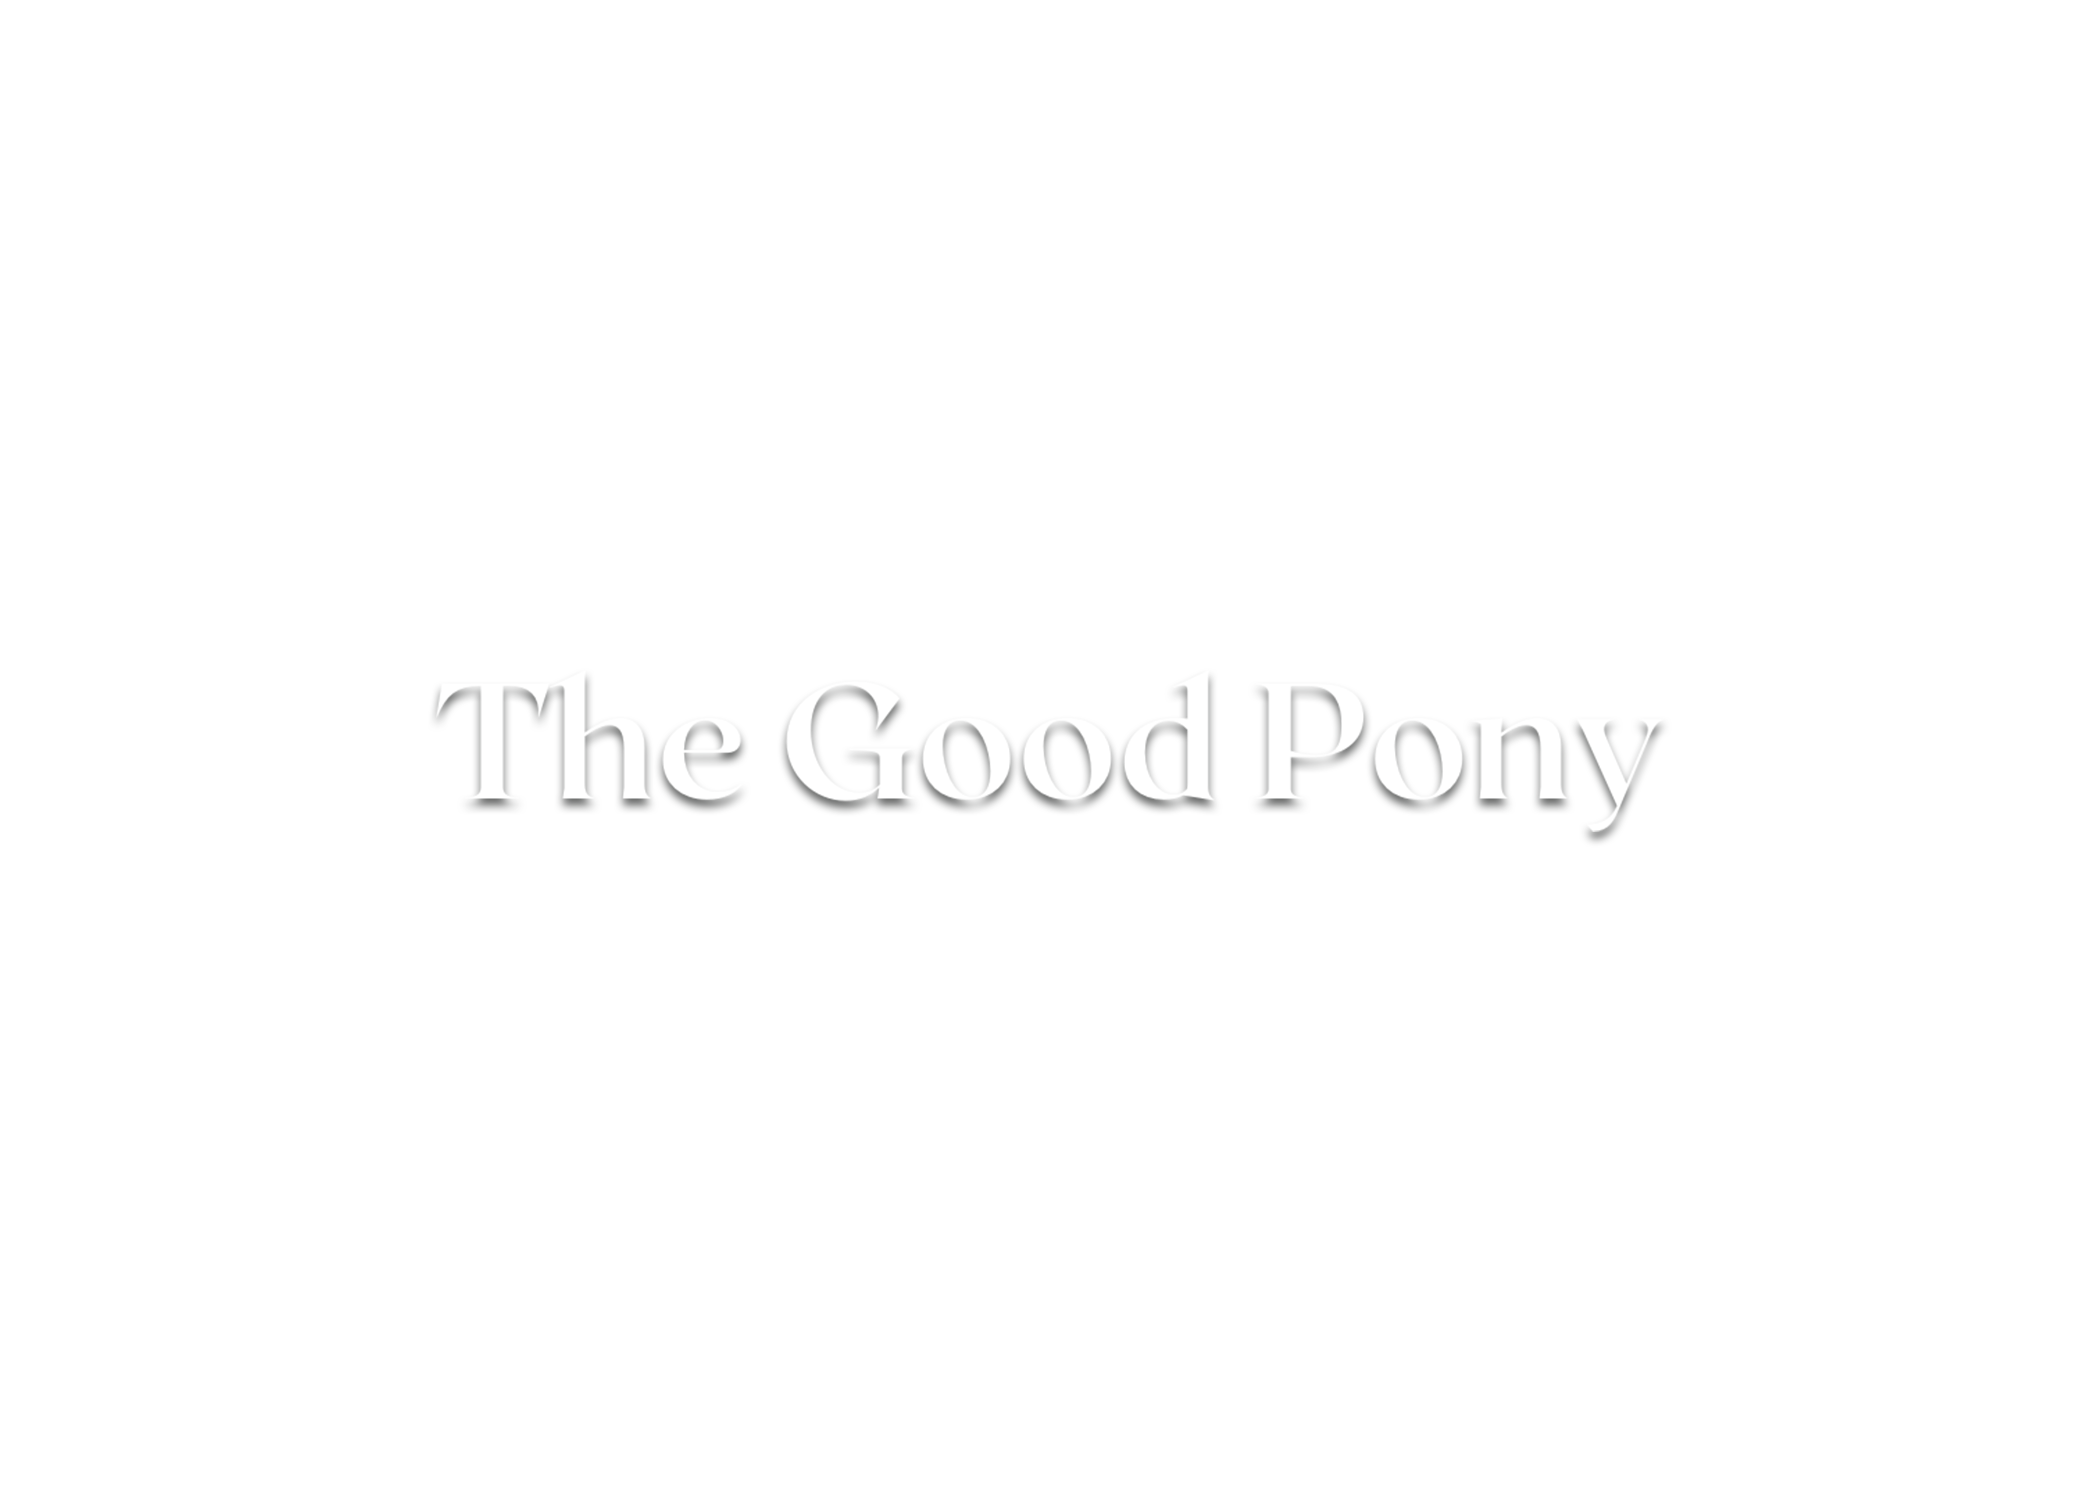 The Good Pony